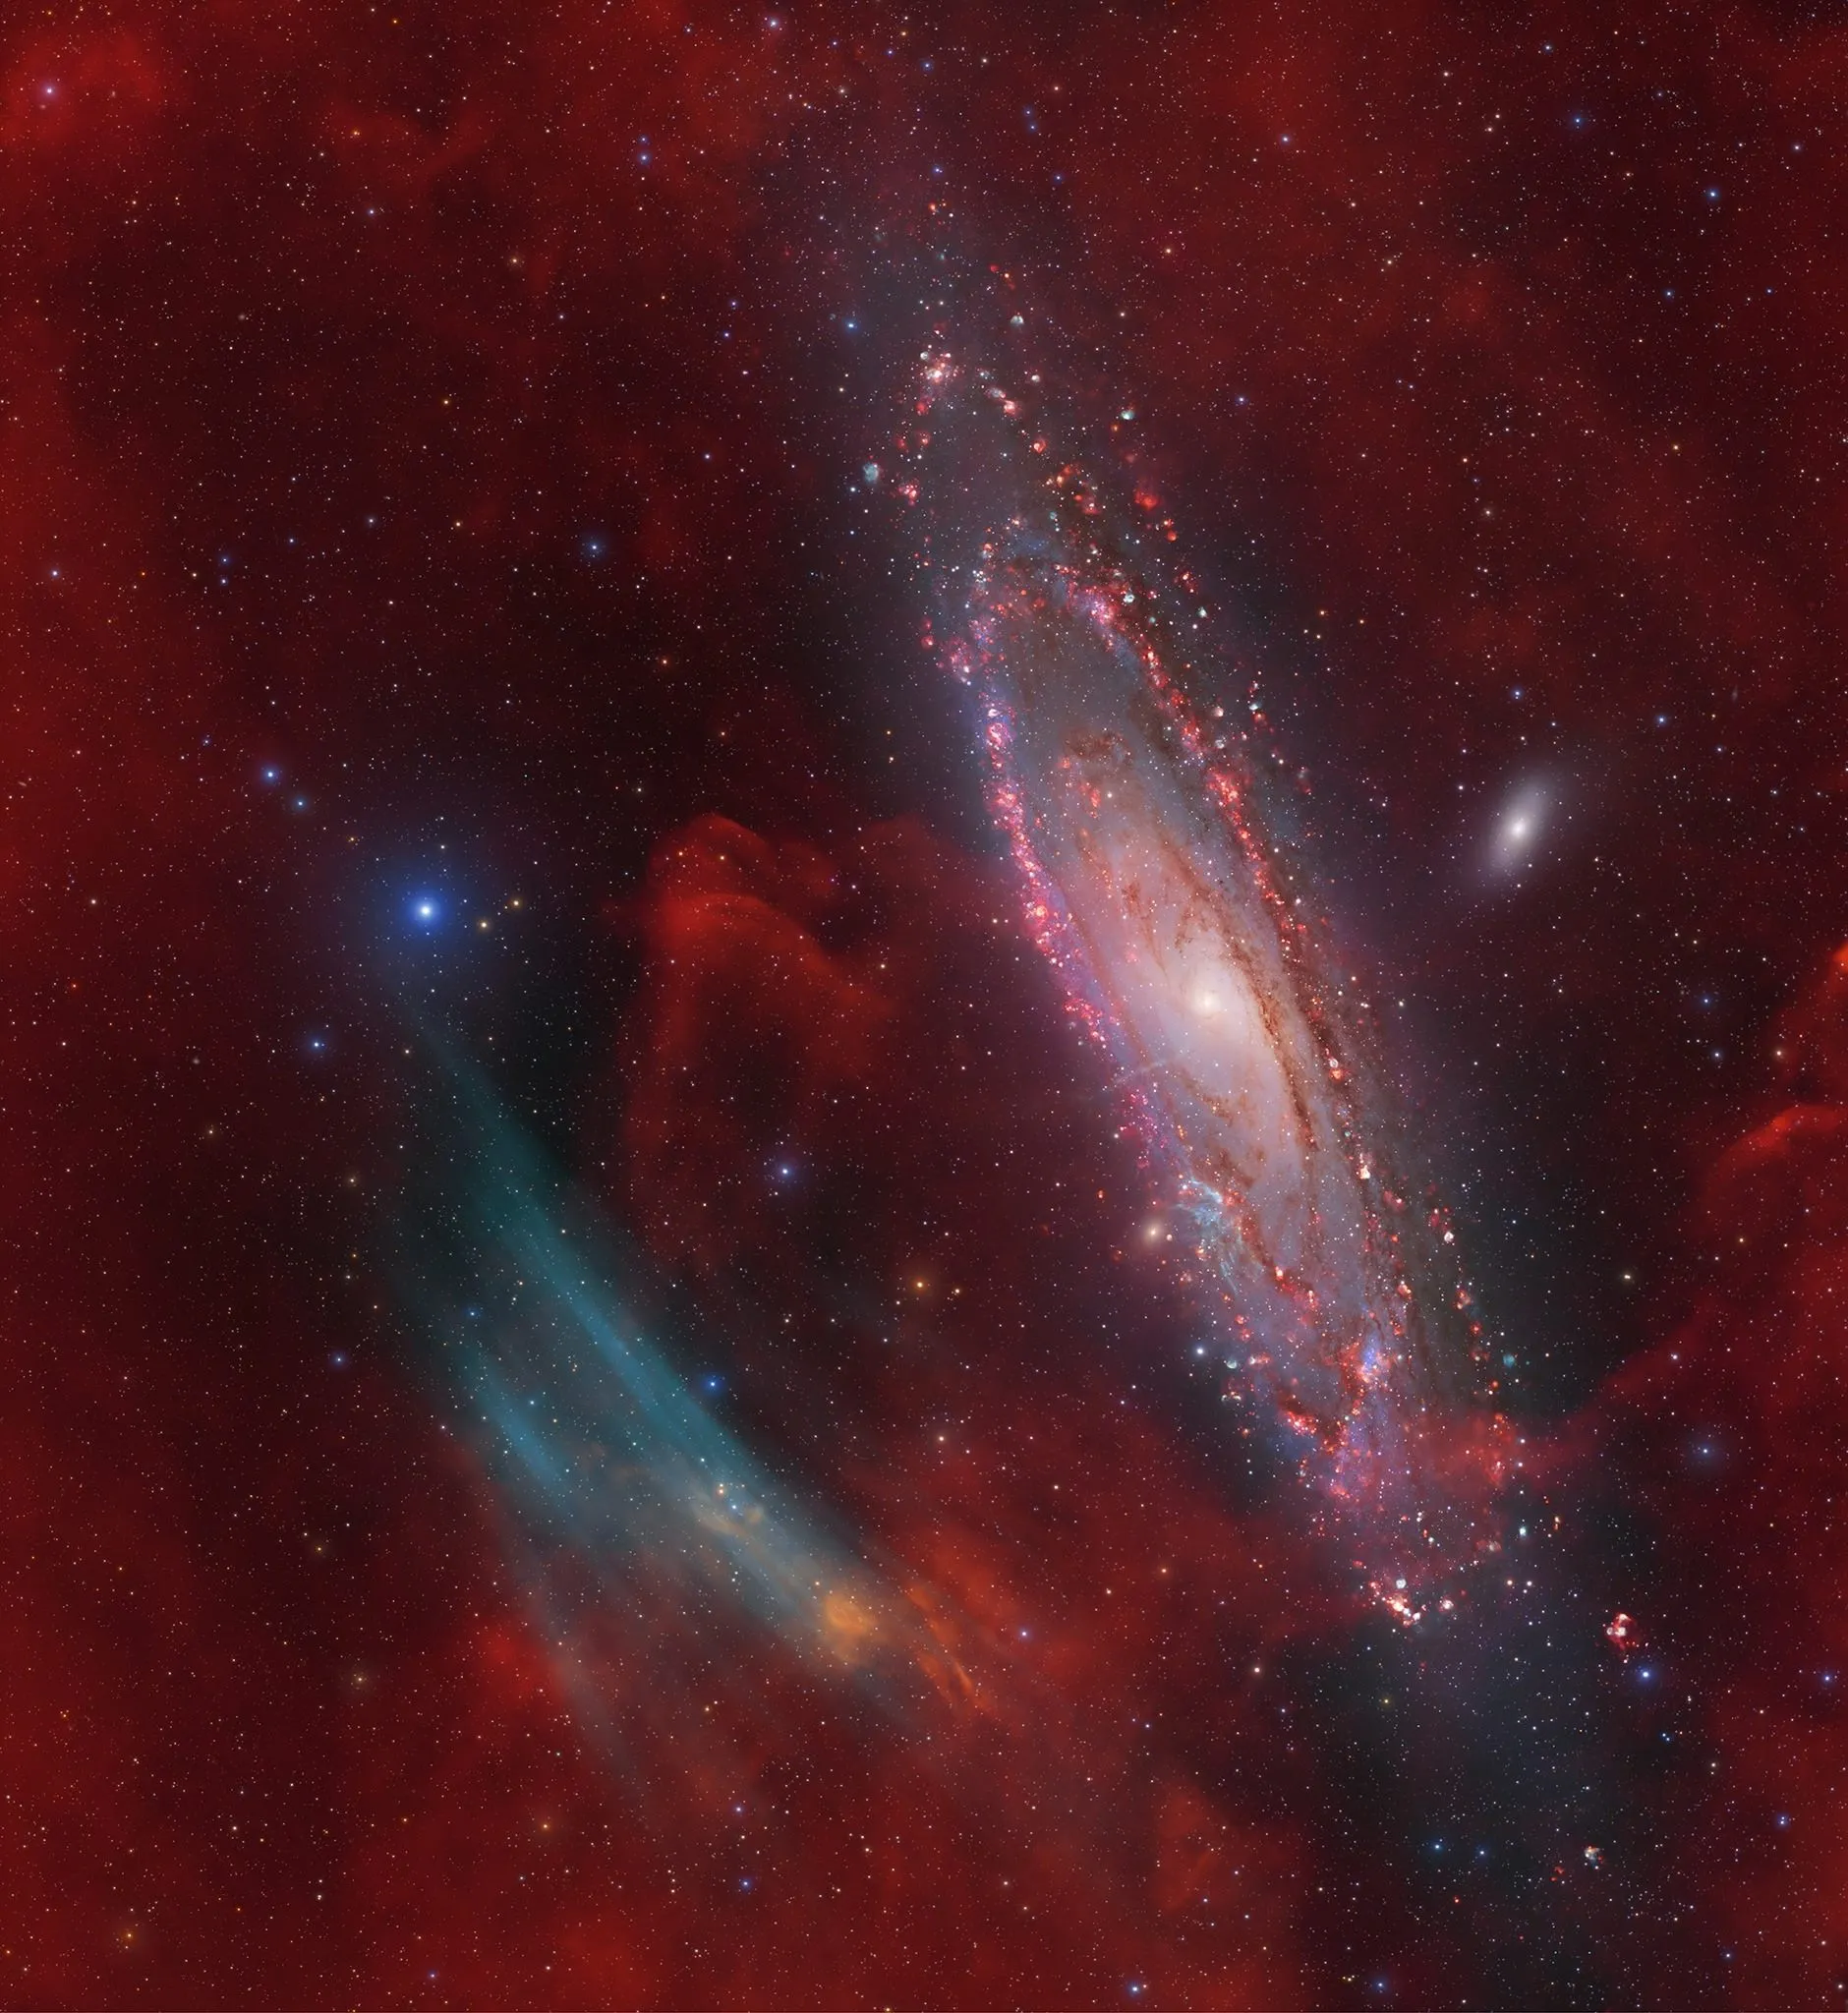 天文摄影爱好者发现M31近旁竟有未知大型星云存在。